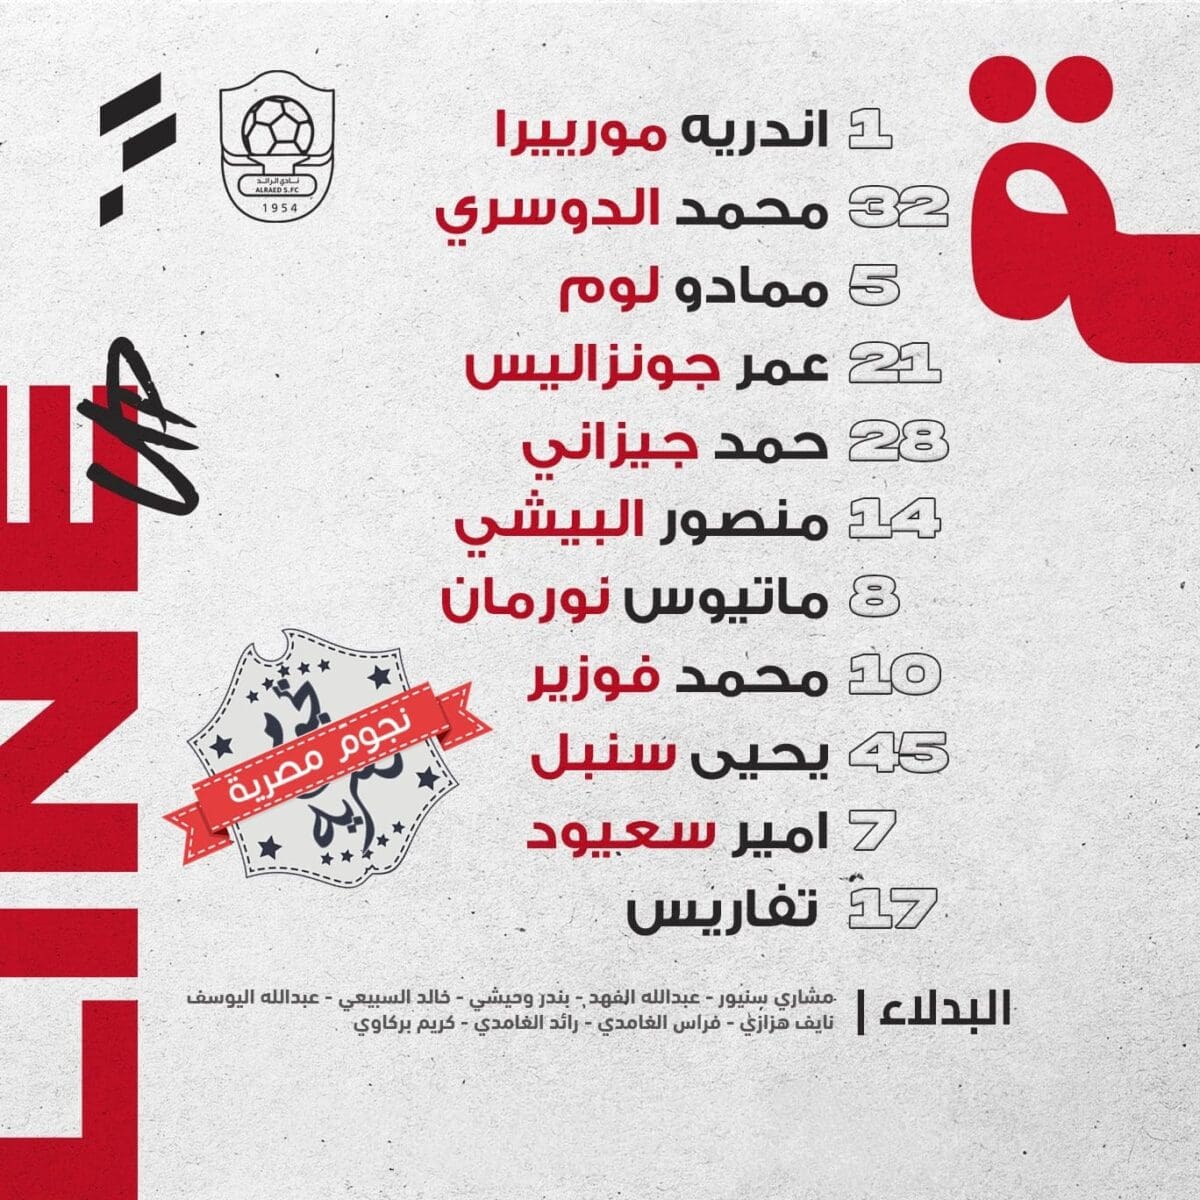 قائمة الرائد ضد الفتح في الدوري السعودي (المصدر. حساب رائد التحدي موقع إكس)